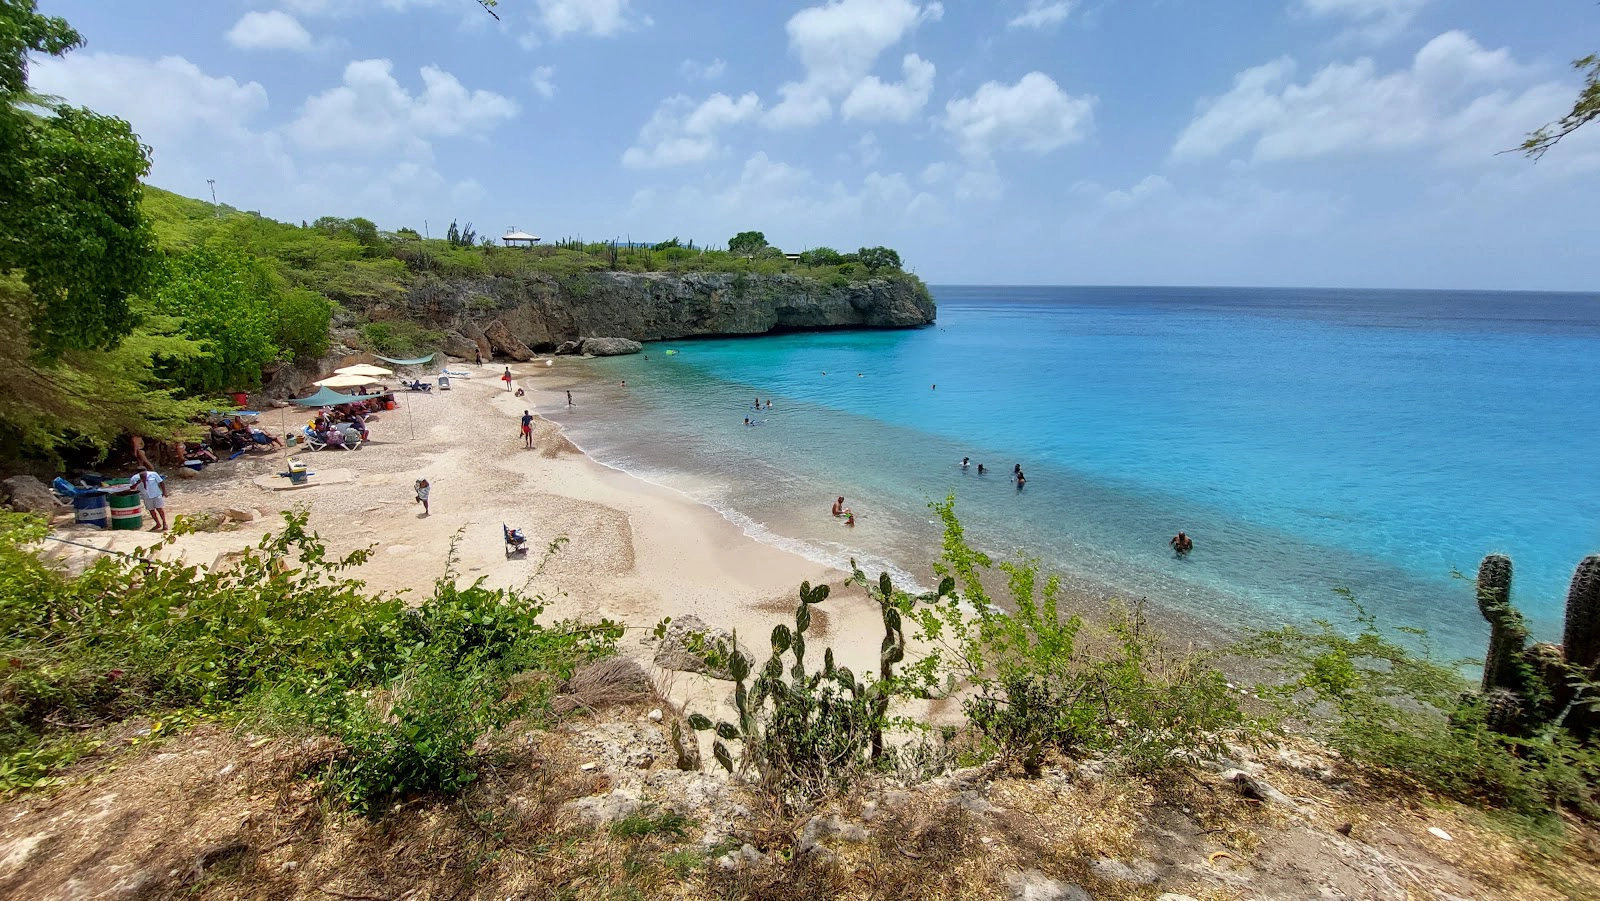  Jeremi  strand - Curaçao